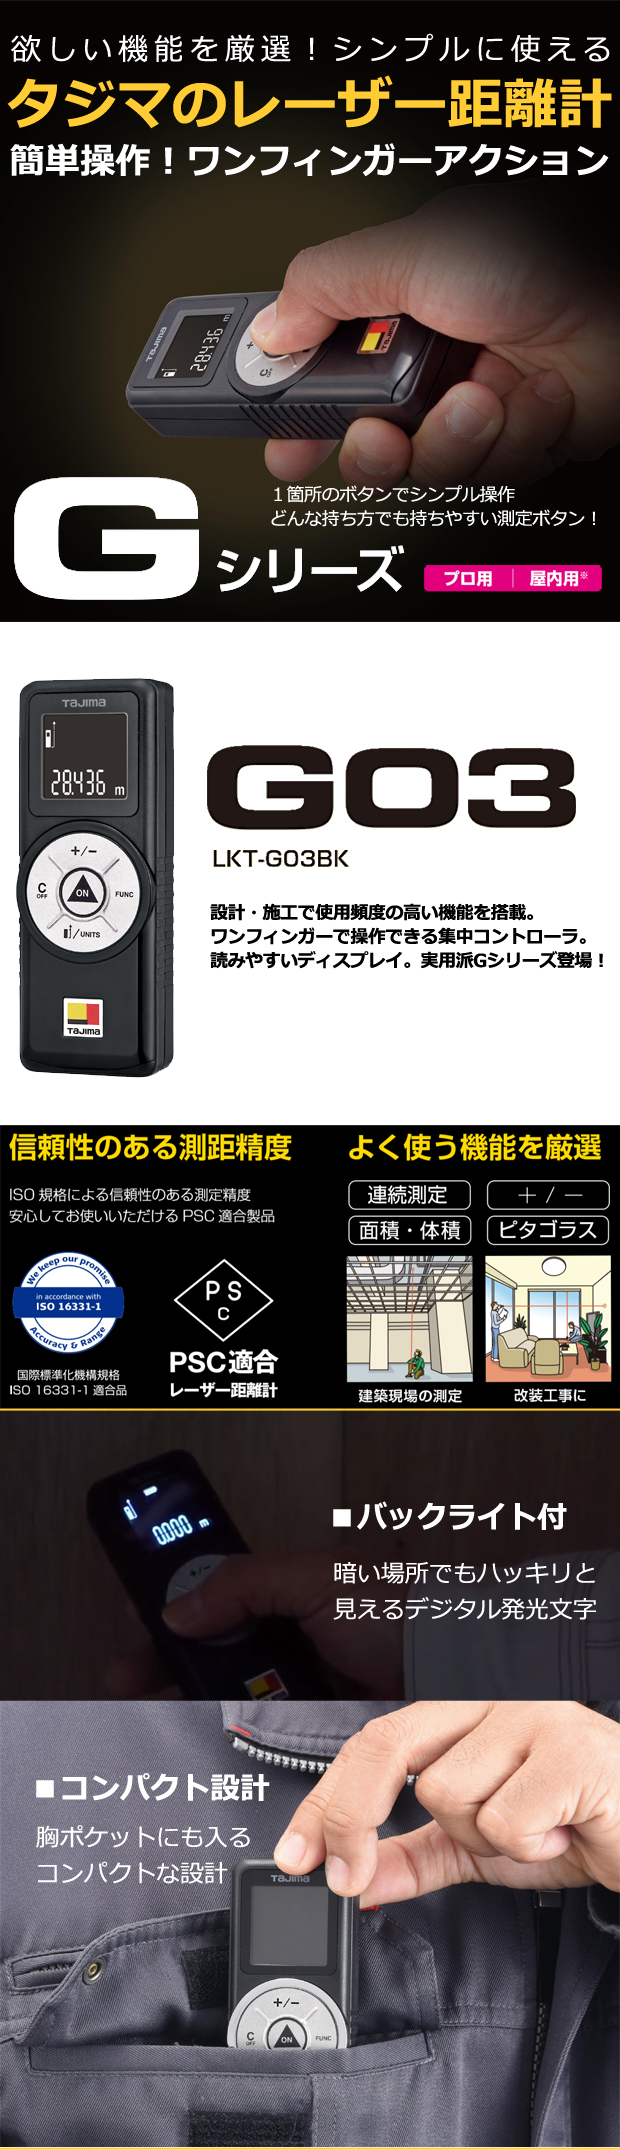 タジマ レーザー距離計 Gシリーズ G03 測距範囲 30m